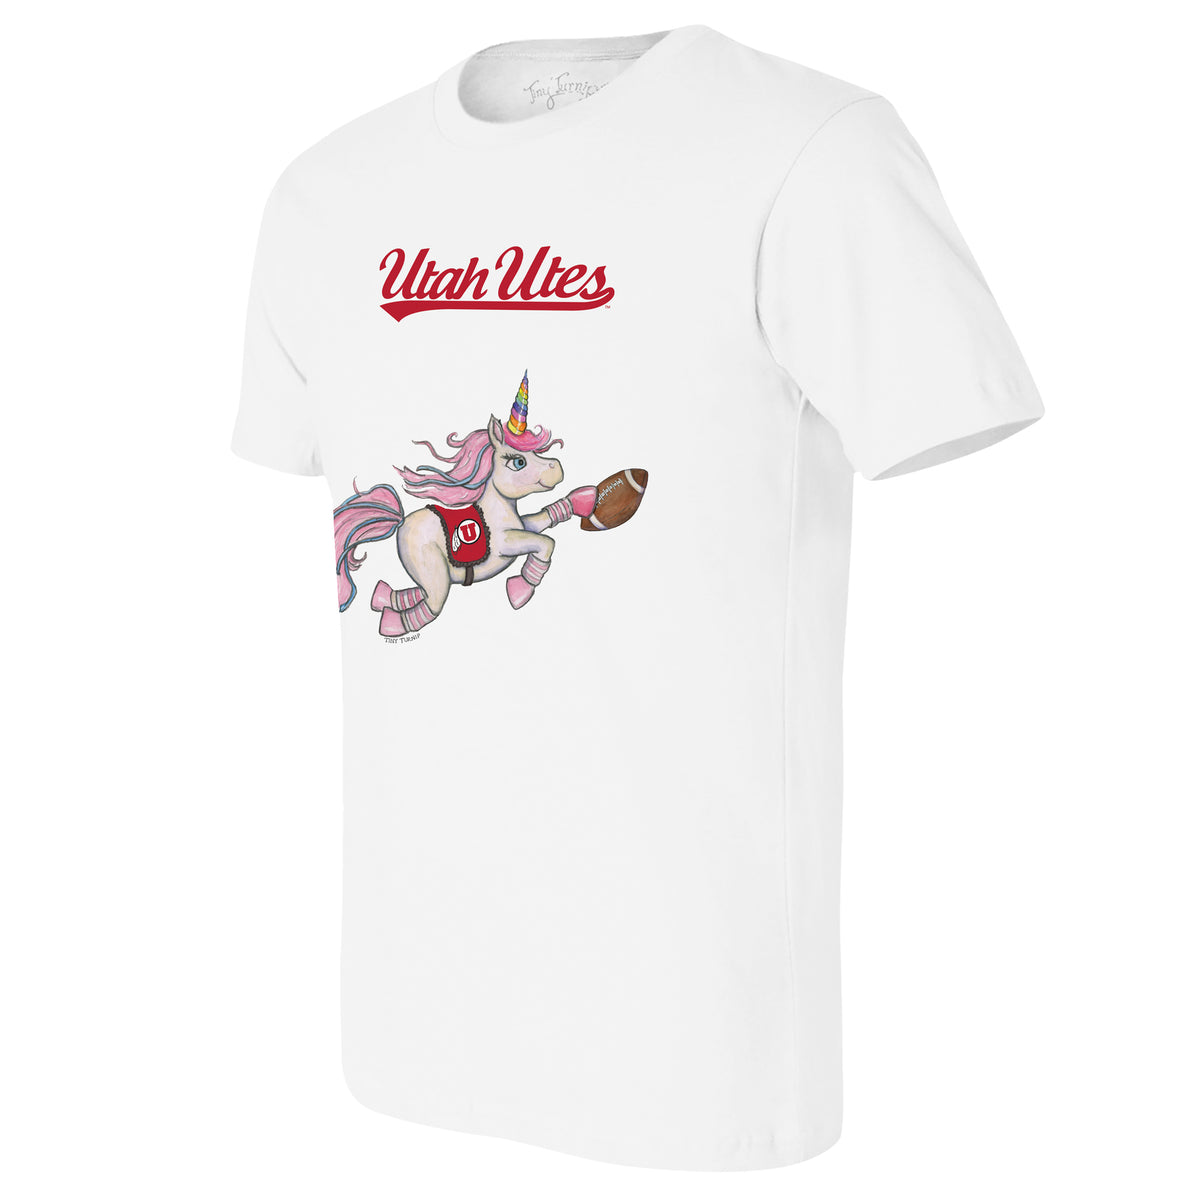 Utah Utes Unicorn Tee Shirt